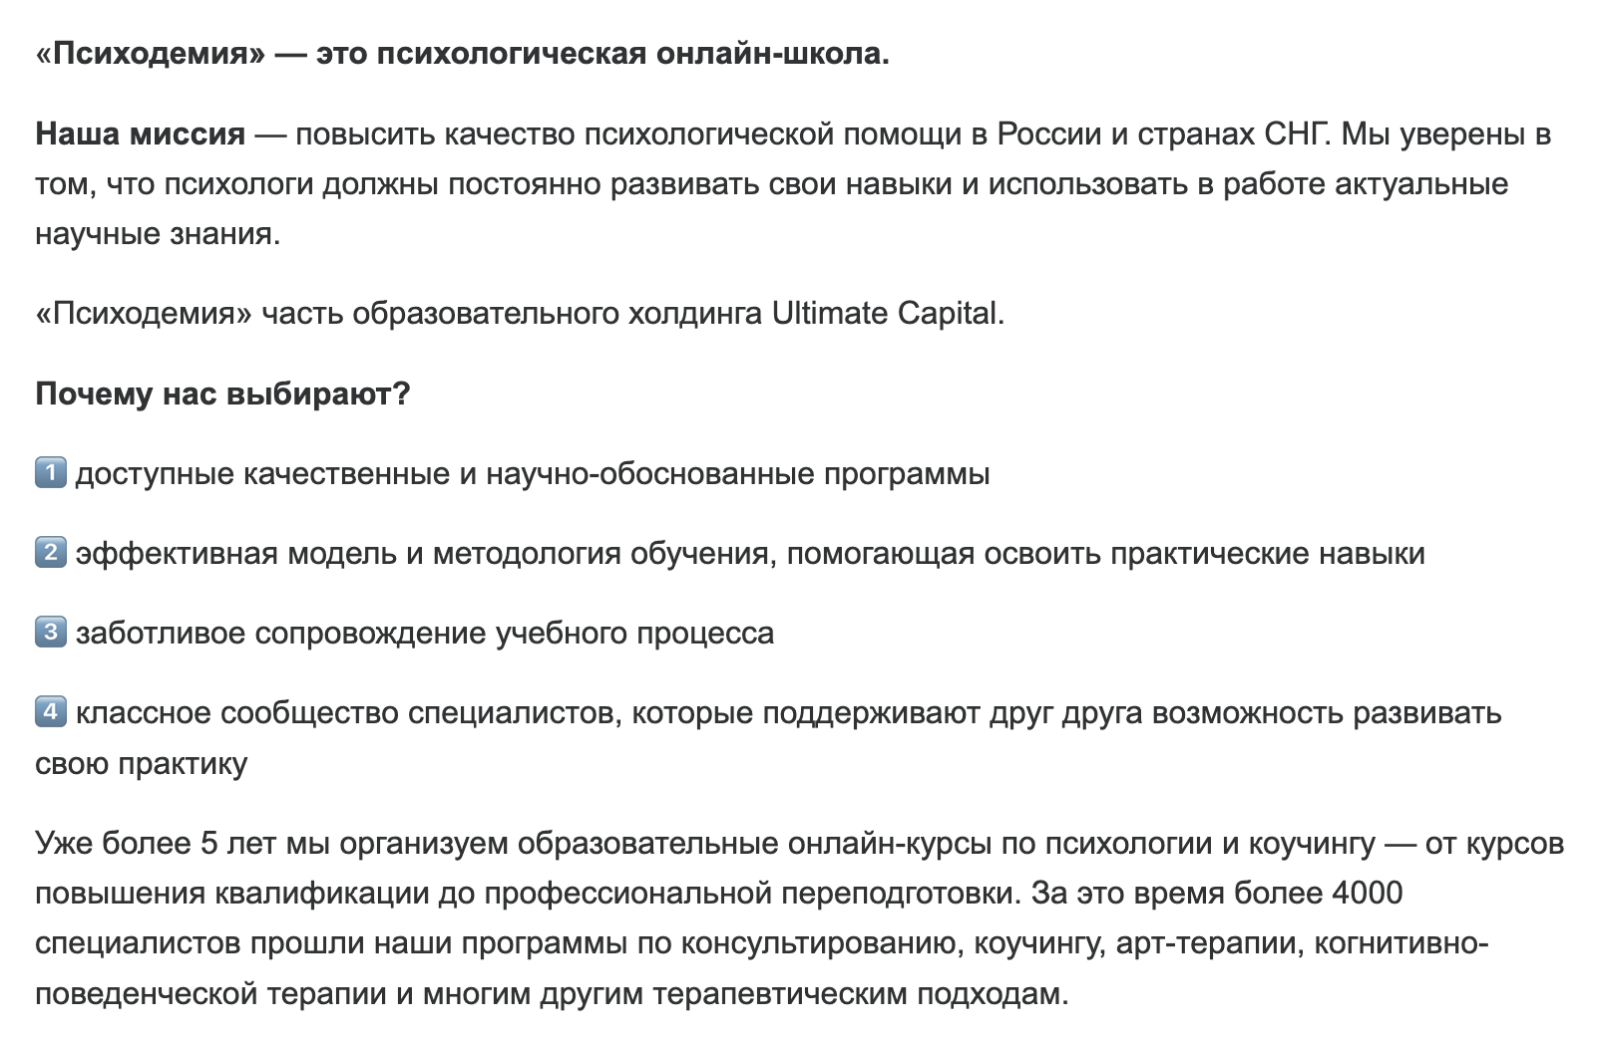 Онлайн-школа «Психодемия» пишет на страничке с вакансией на HH.ru, что за 5 лет через них прошли 4000 специалистов. Из этих цифр можно рассчитать примерную выручку за предыдущий год — умножив средний чек на количество студентов. Источник: hh.ru